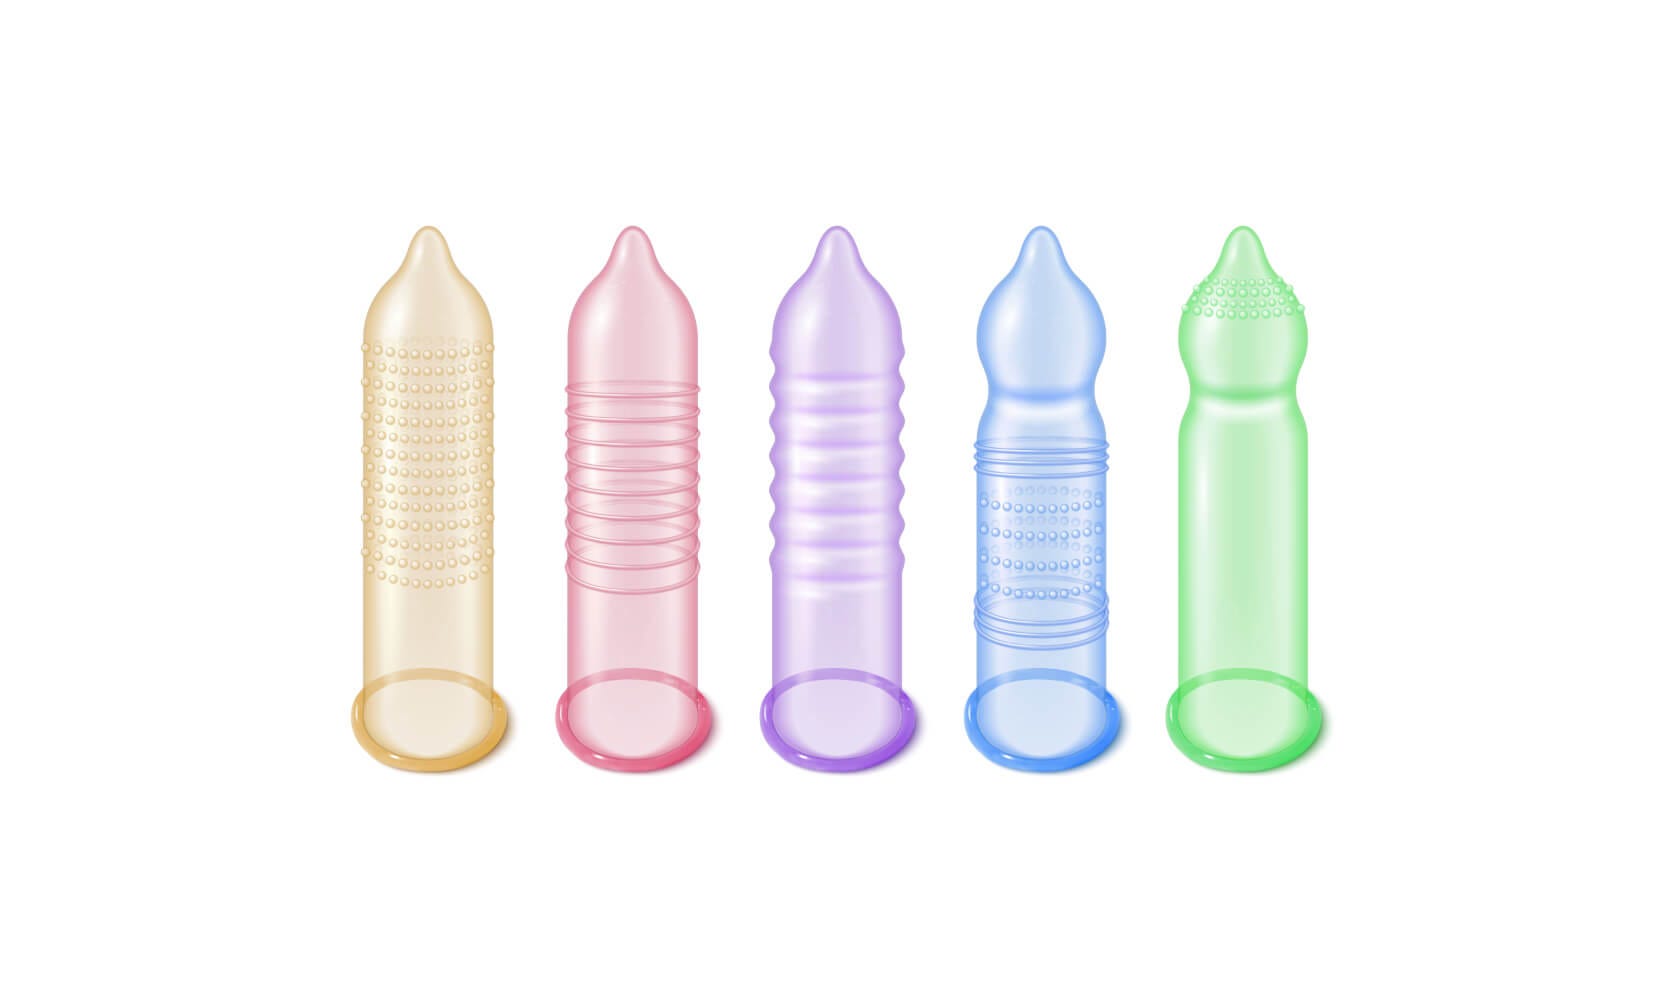 Diferentes formas de condones para mostrar sus texturas y formas